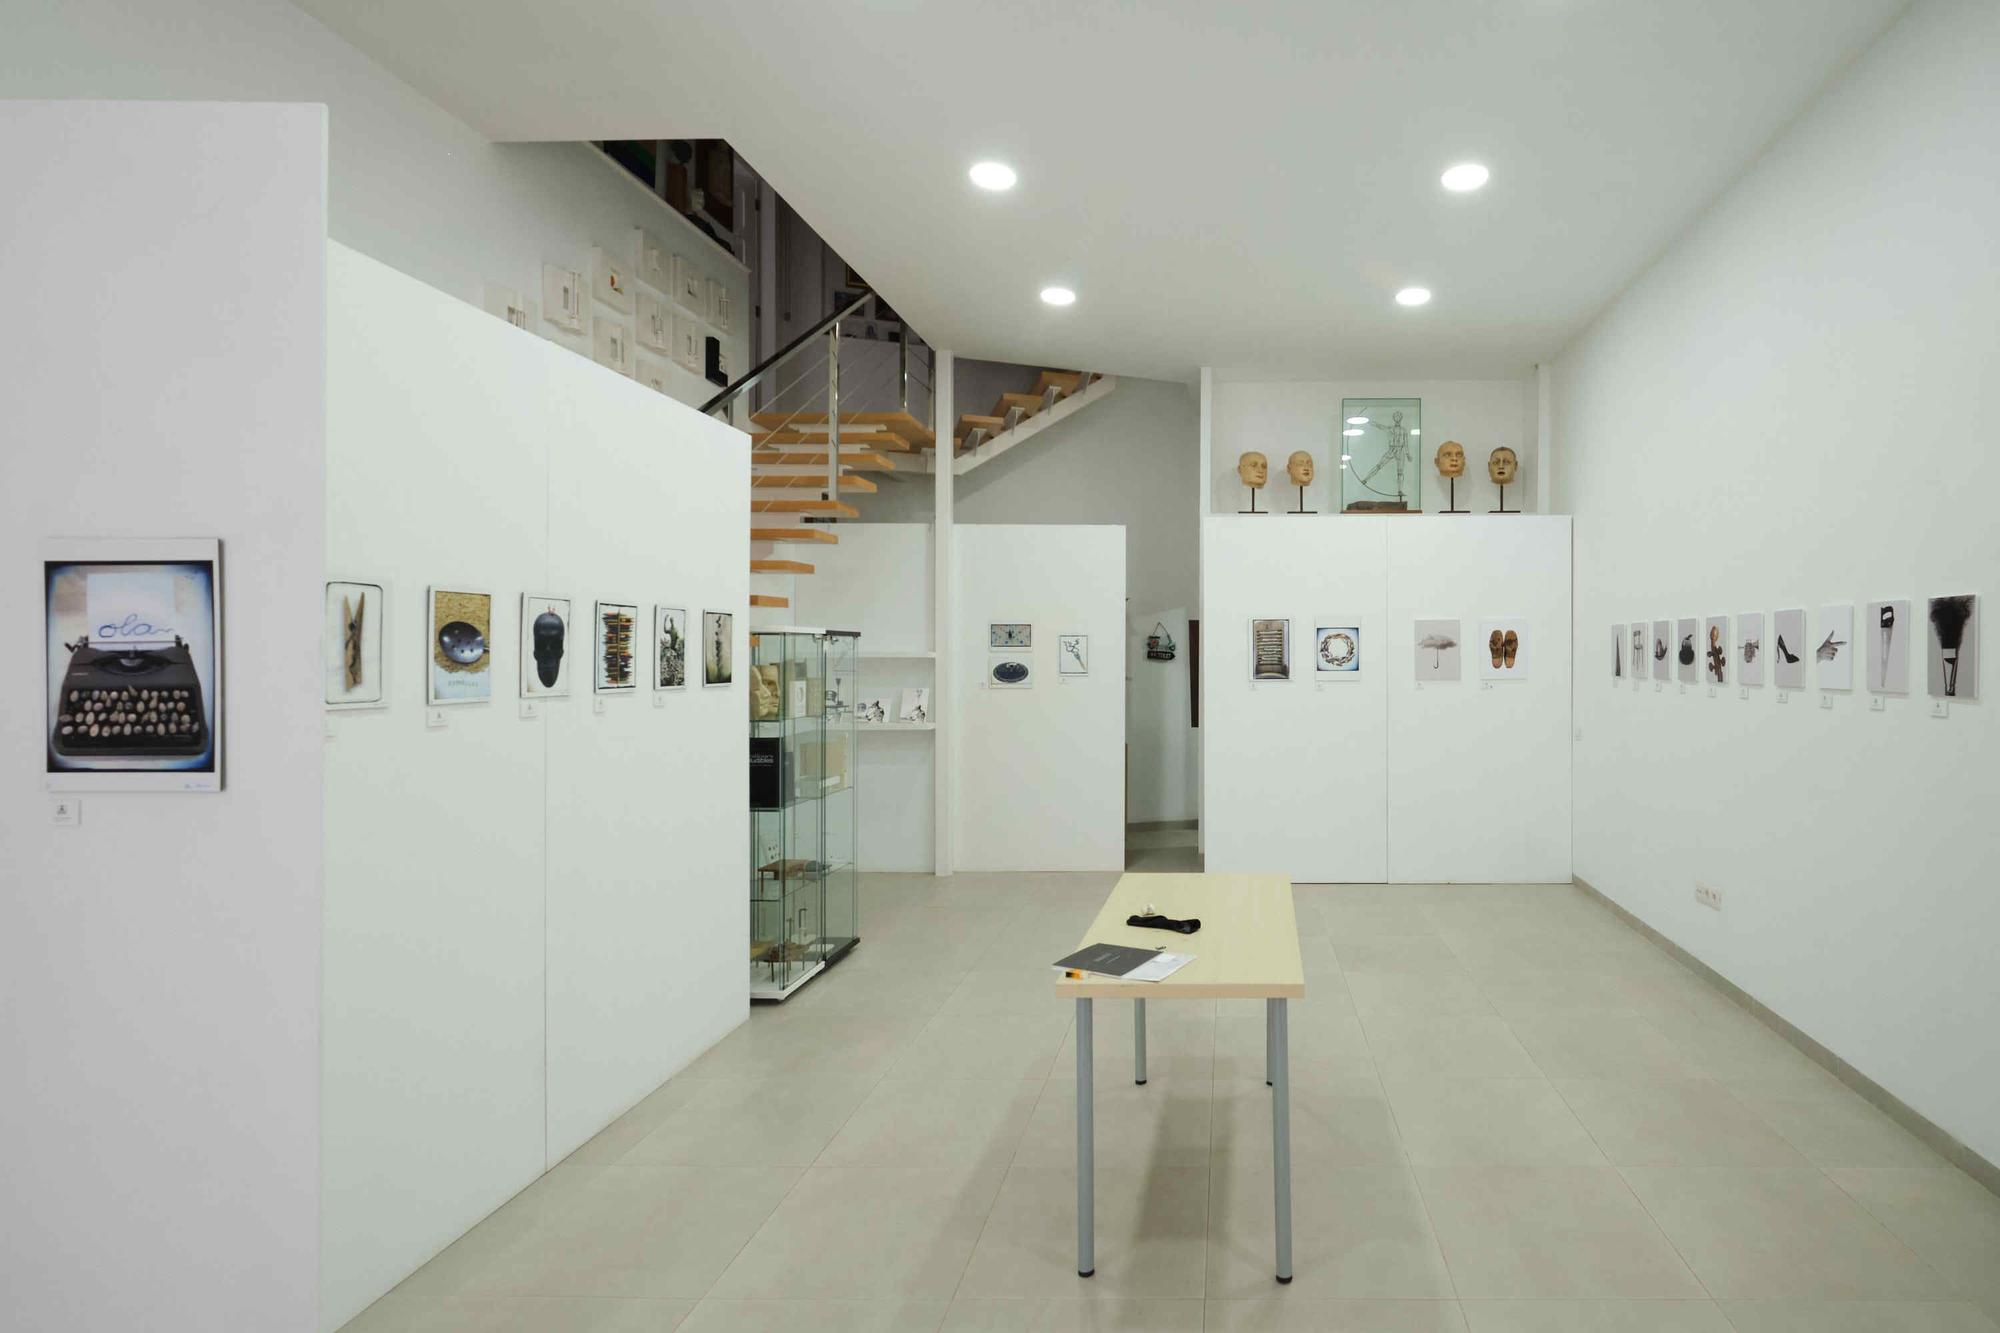 Fotografías de la exposición 'La mirada encontrada' de Valido y Hiernaux en Desván Blanco